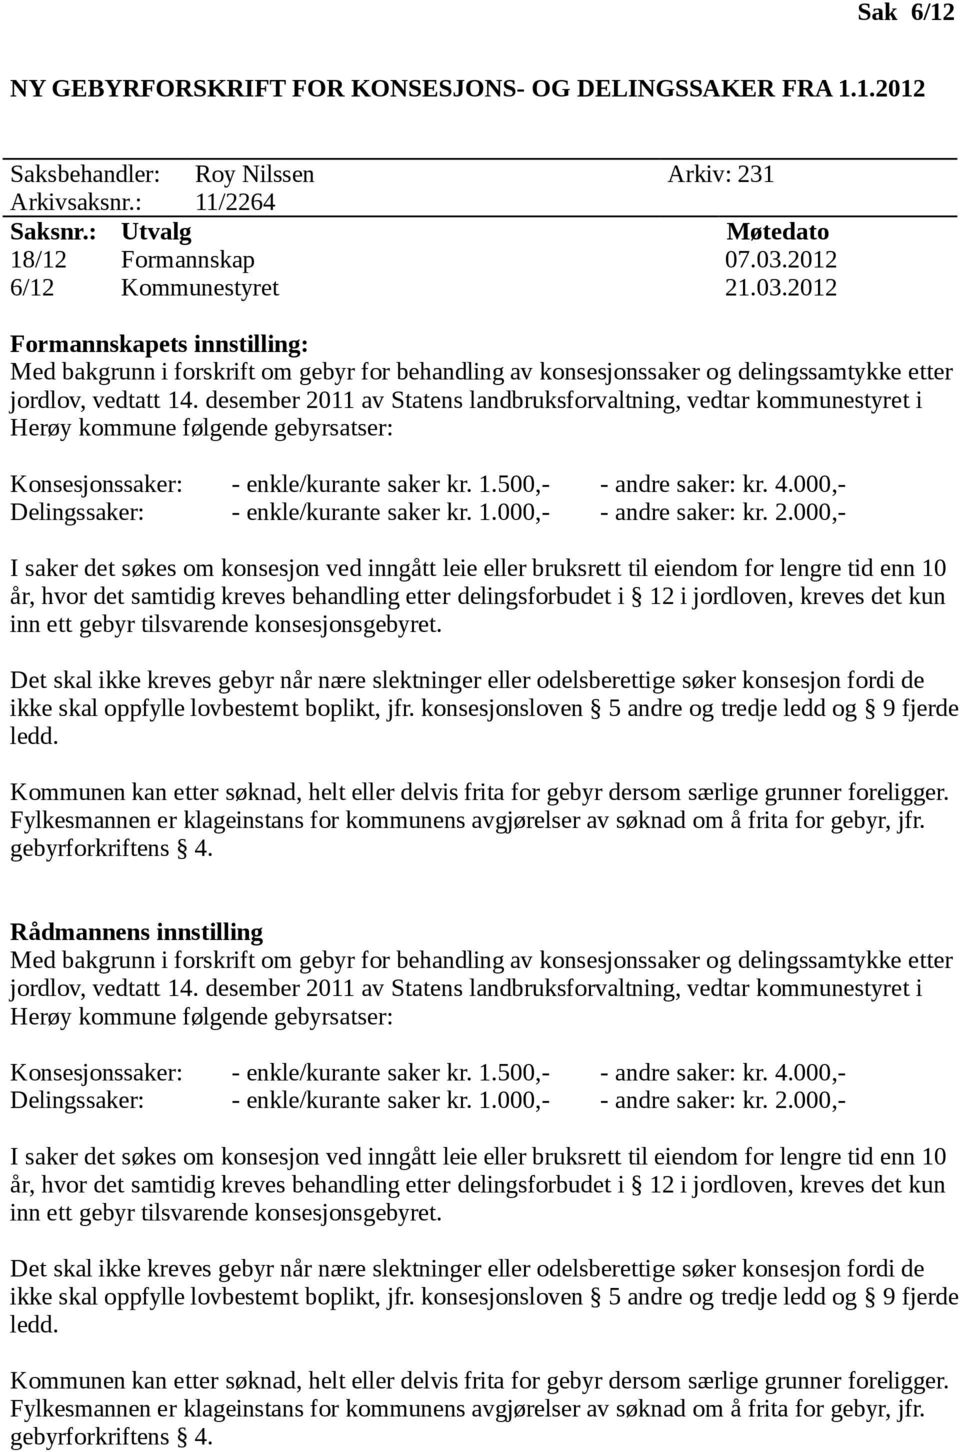 desember 2011 av Statens landbruksforvaltning, vedtar kommunestyret i Herøy kommune følgende gebyrsatser: Konsesjonssaker: - enkle/kurante saker kr. 1.500,- - andre saker: kr. 4.